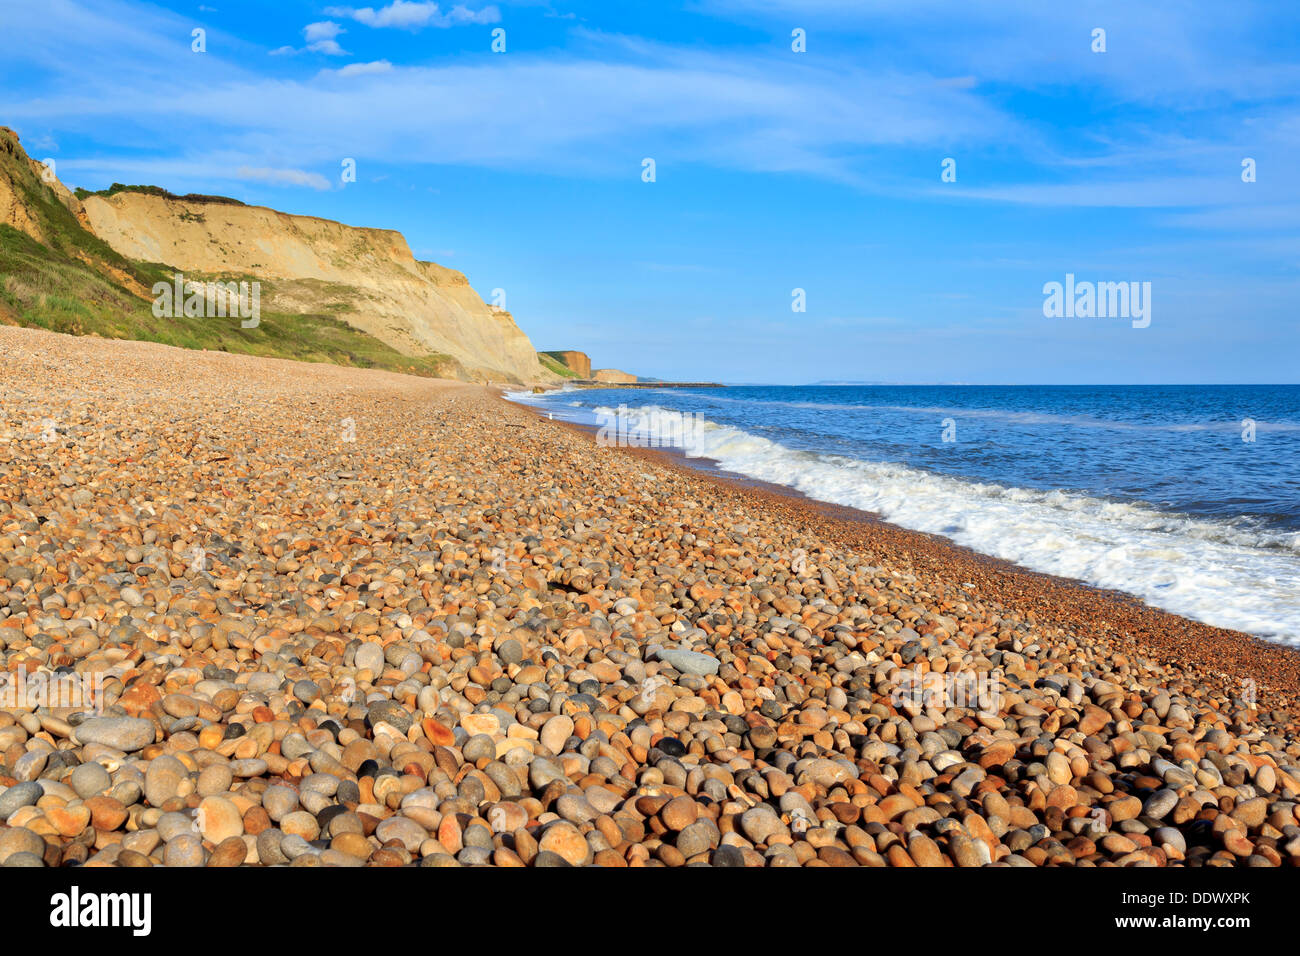 Shingle beach at Eype Dorset England UK Europe Stock Photo